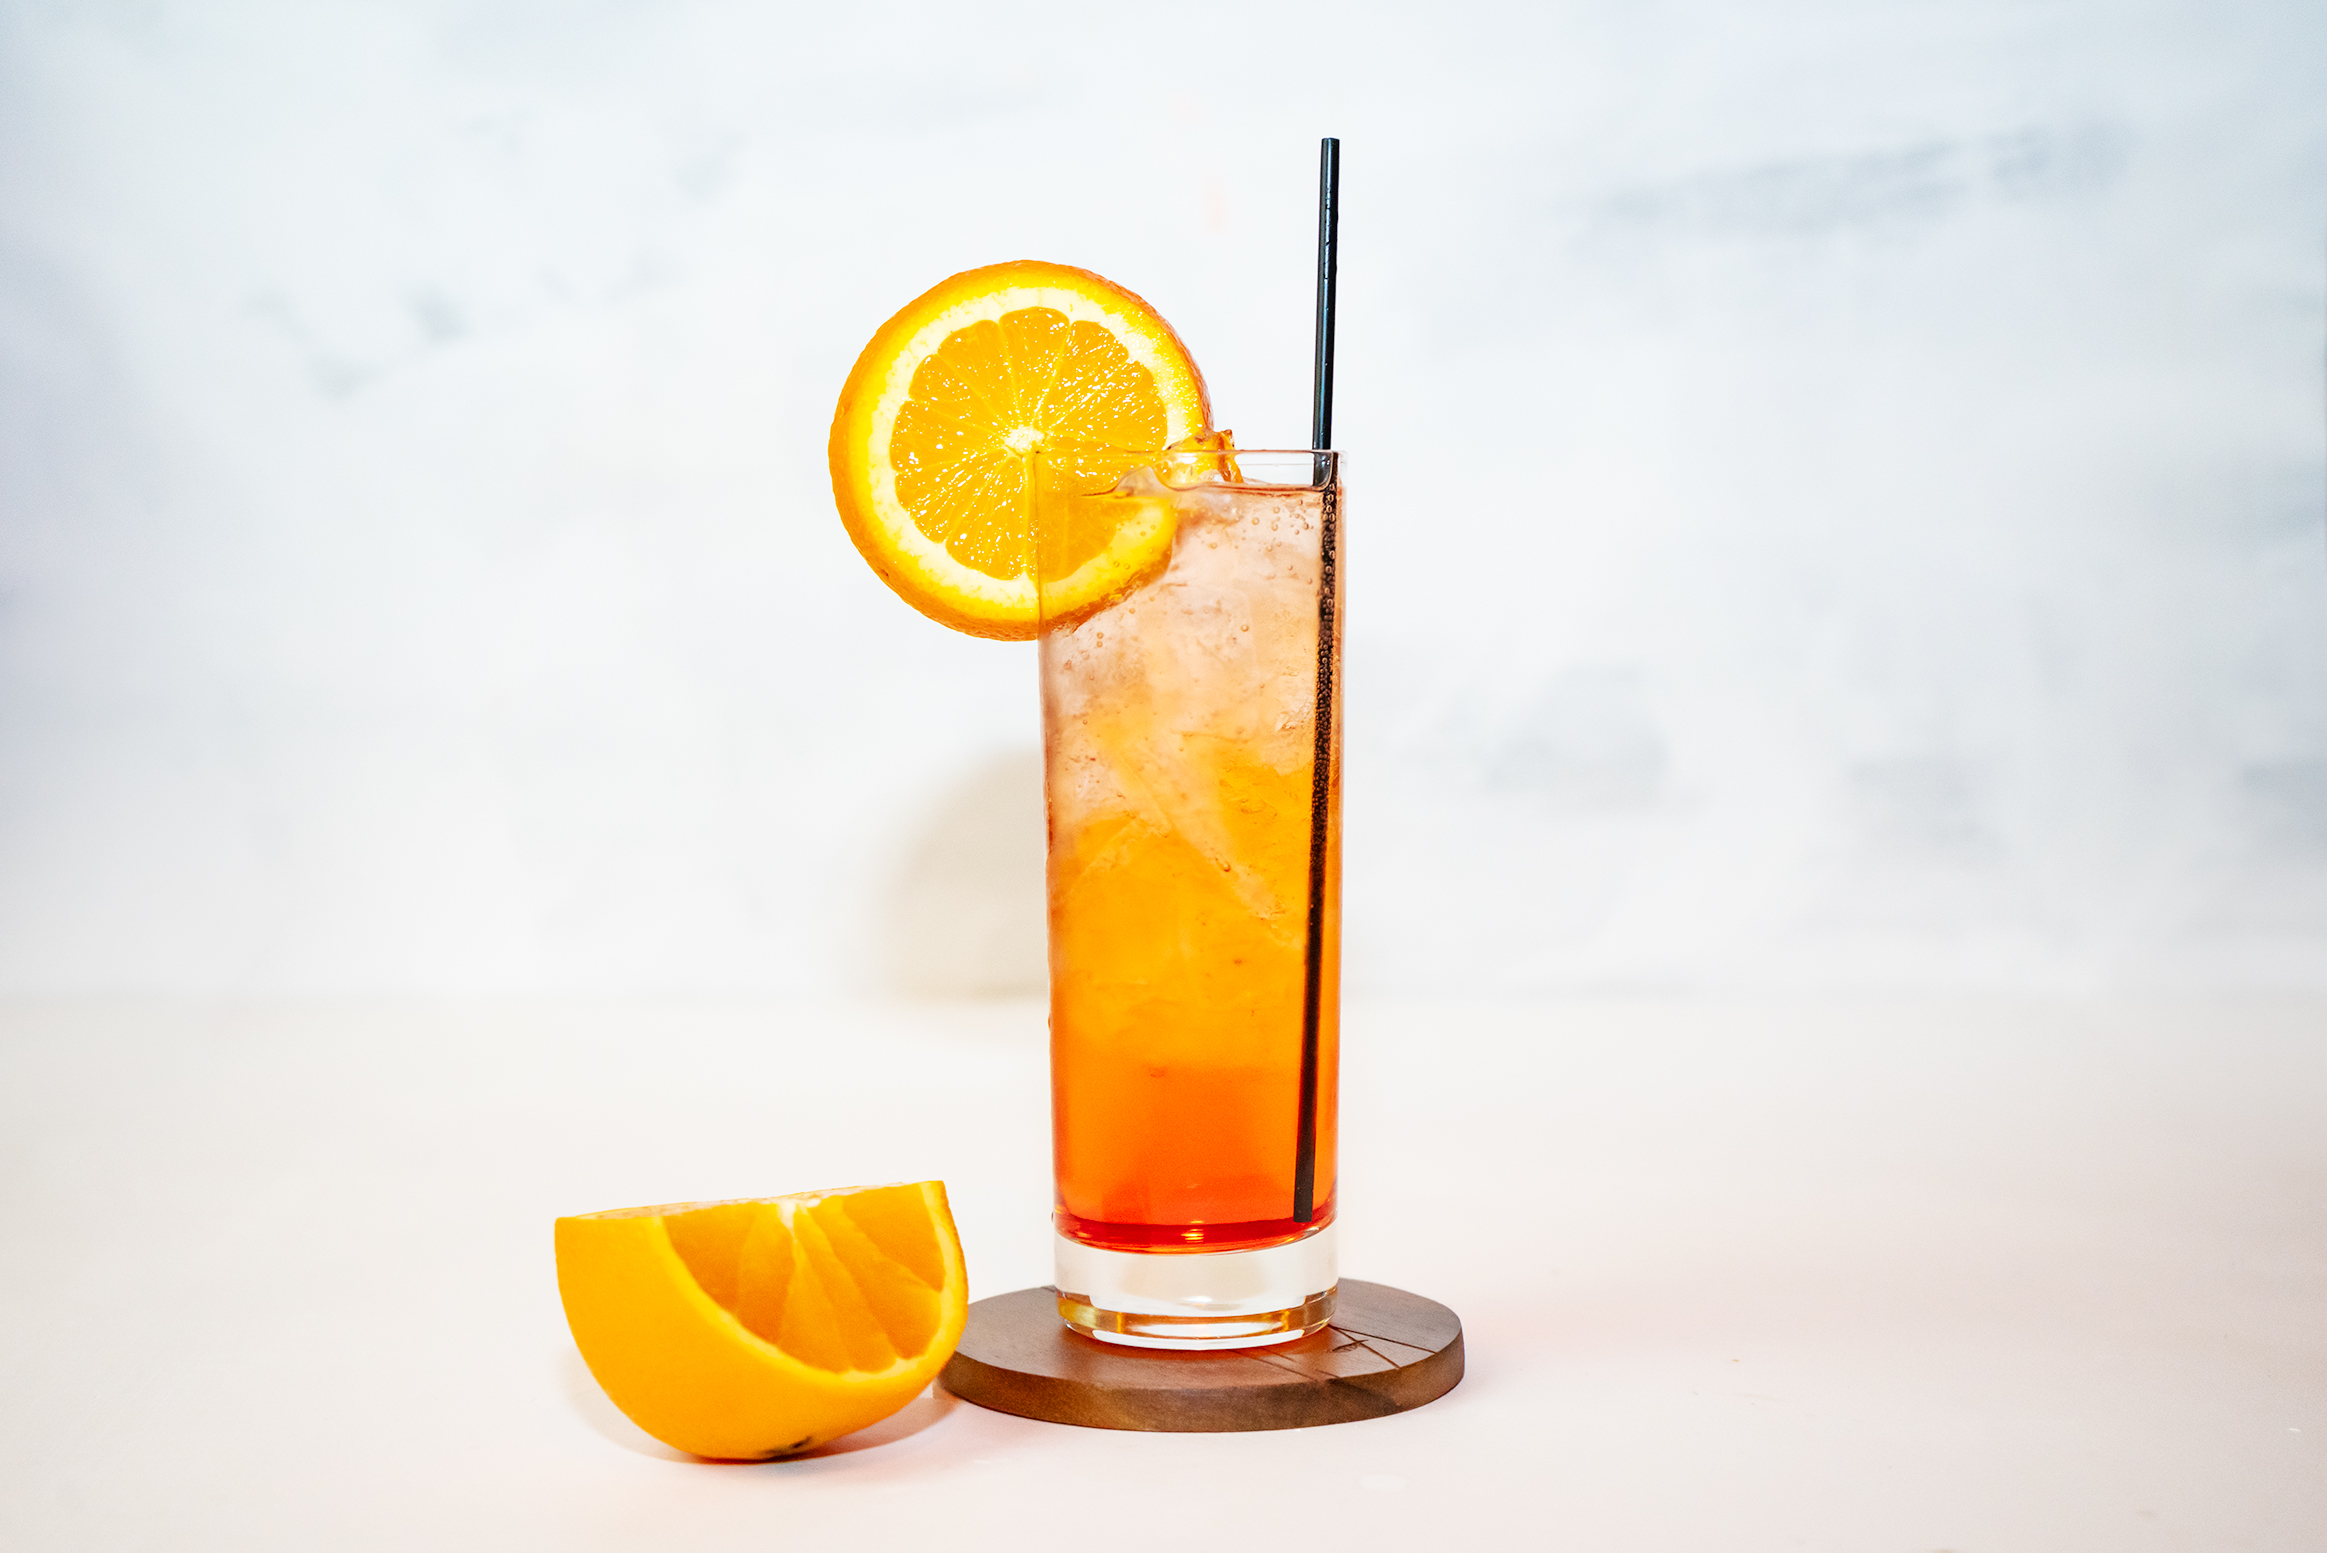 Spritz Veneziano Cocktail With Orange Garnish